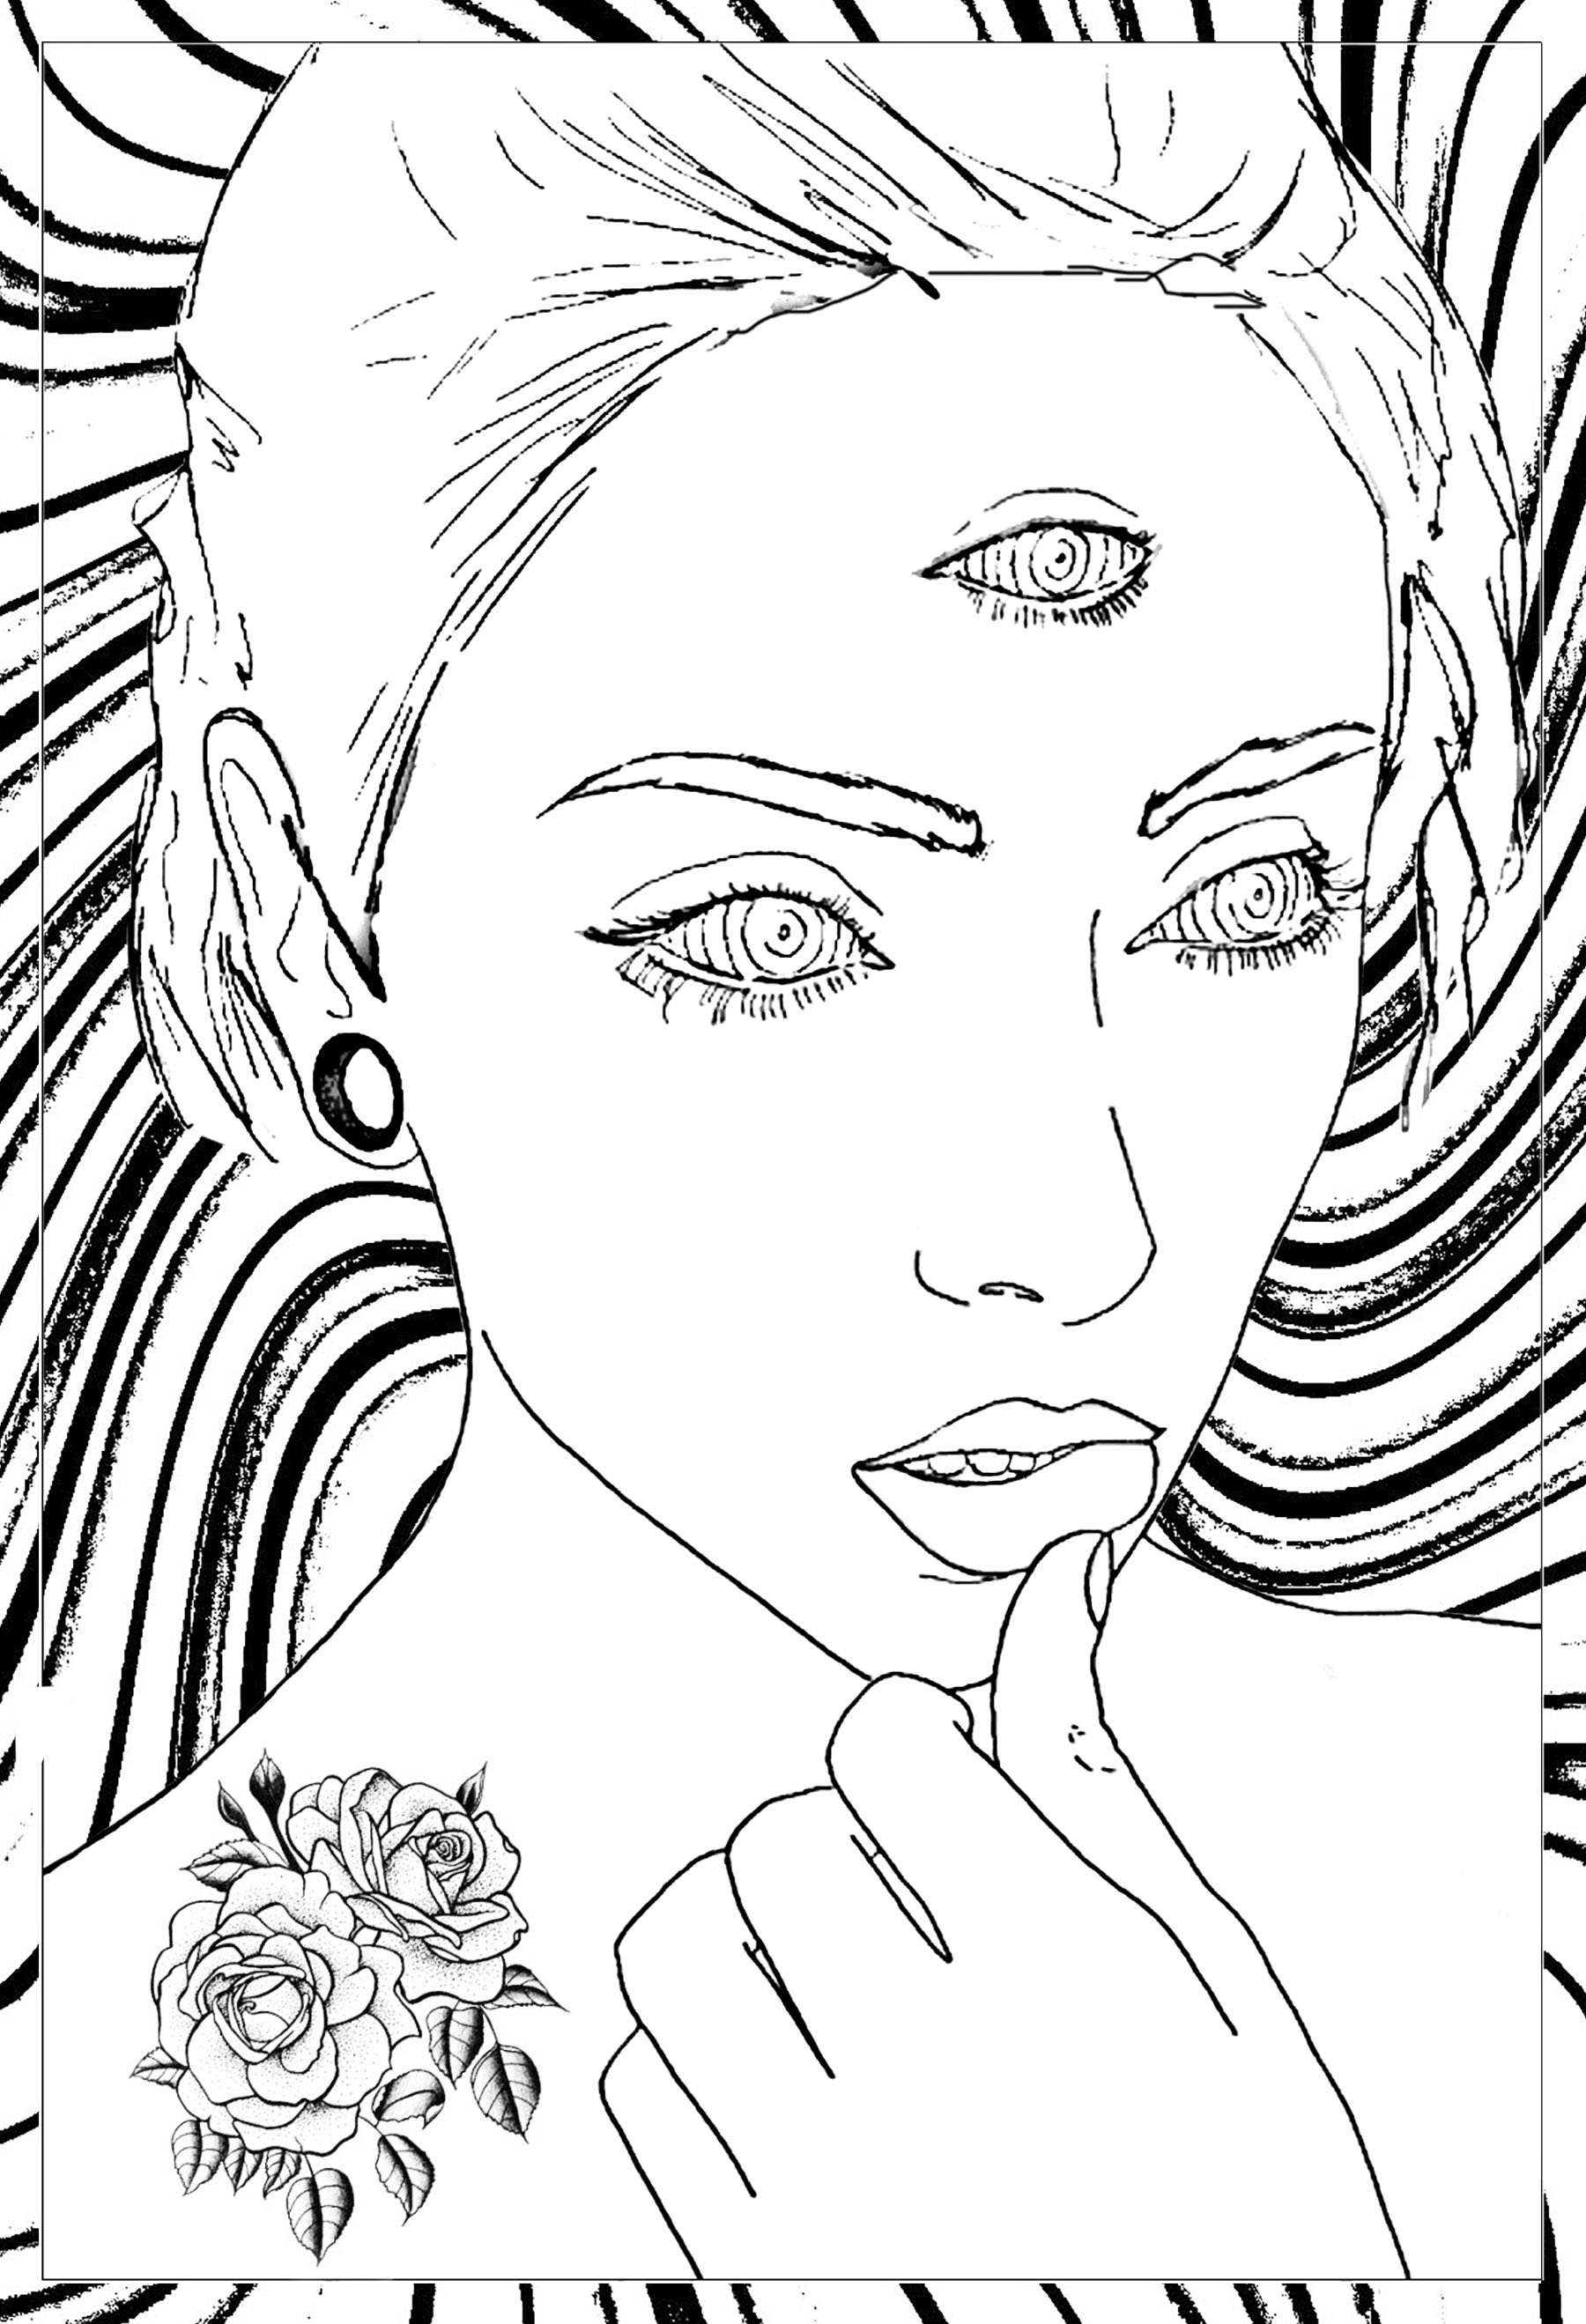 Disegno originale di una donna pensierosa con 3 occhi... con uno sfondo molto psichedelico